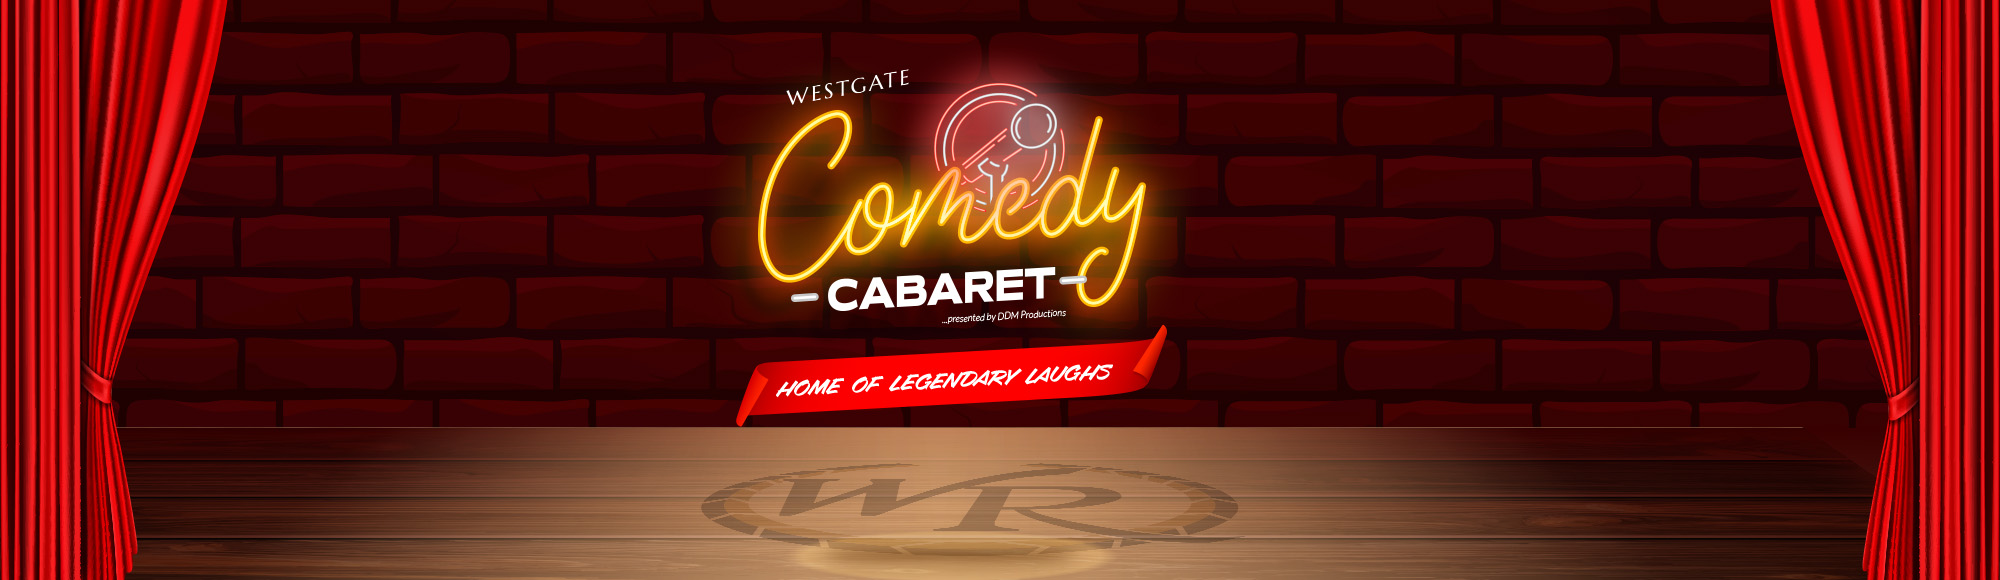 Westgate Comedy Cabaret show